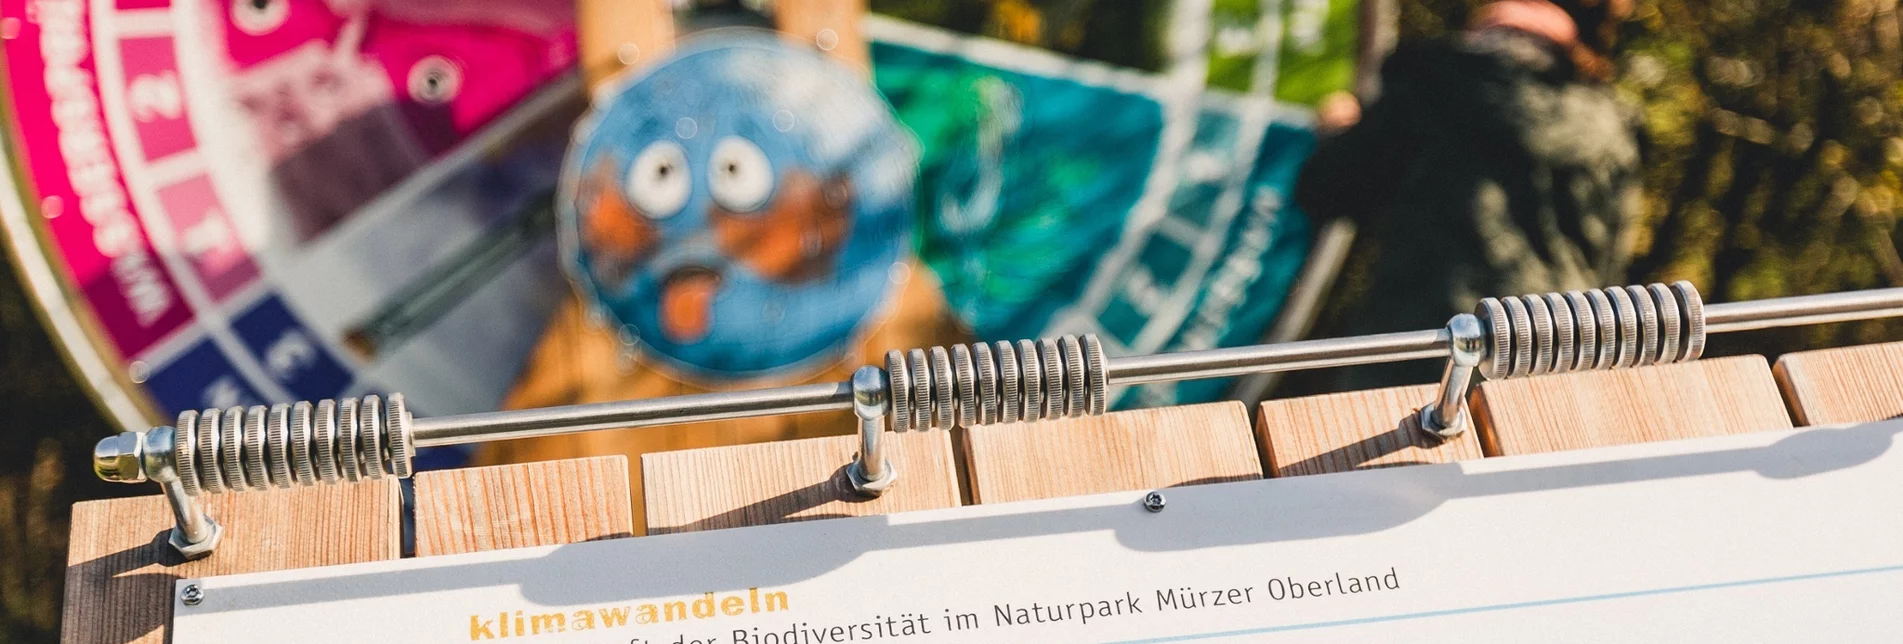 Themen- und Lehrpfad Der Erlebnisweg "klimawandeln" im Naturpark Mürzer Oberland - Touren-Impression #1 | © Naturpark Mürzer Oberland